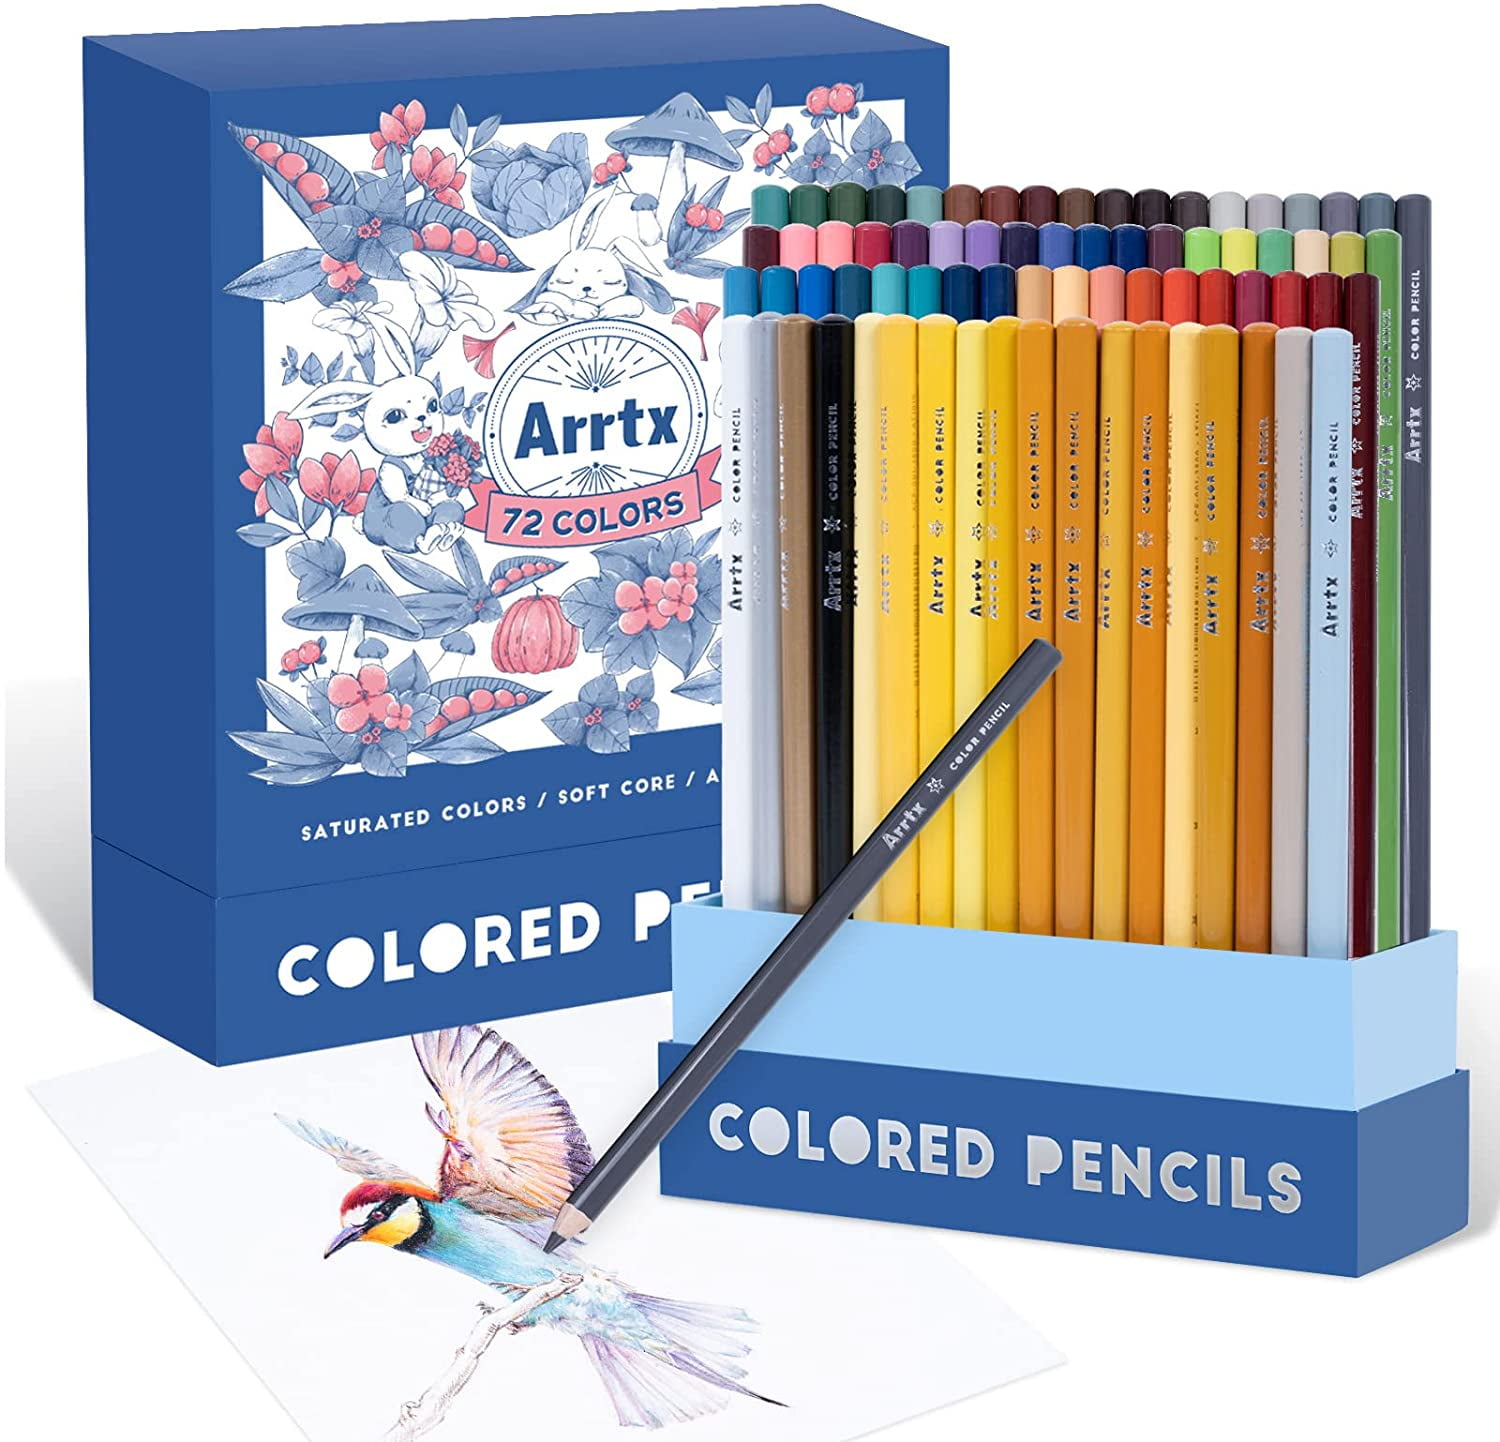 Arrtx Artist 72 Colored Pencils Set, Premium Soft Core Colored